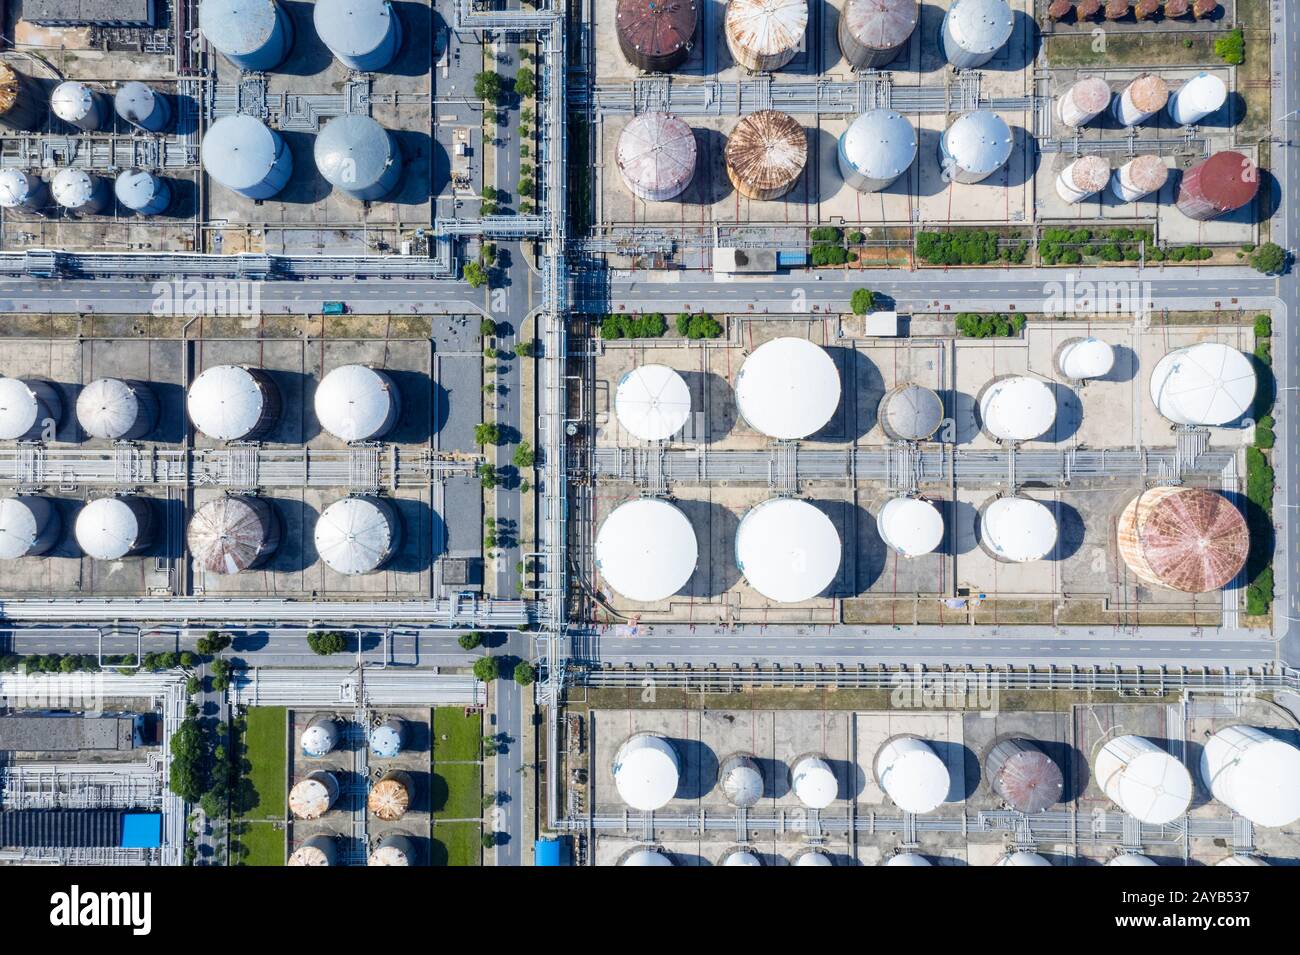 réservoirs de stockage de liquides dans les usines pétrochimiques Banque D'Images